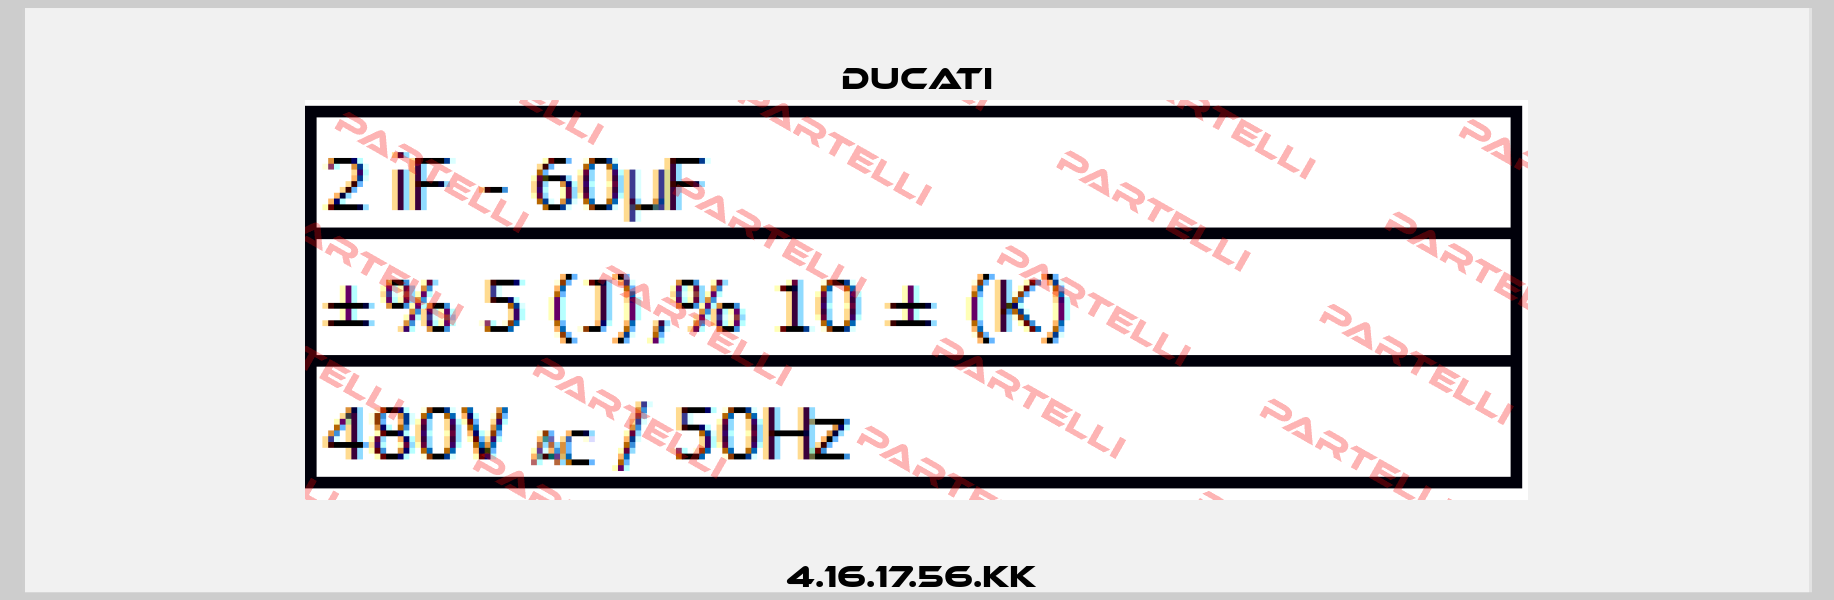 4.16.17.56.KK  Ducati